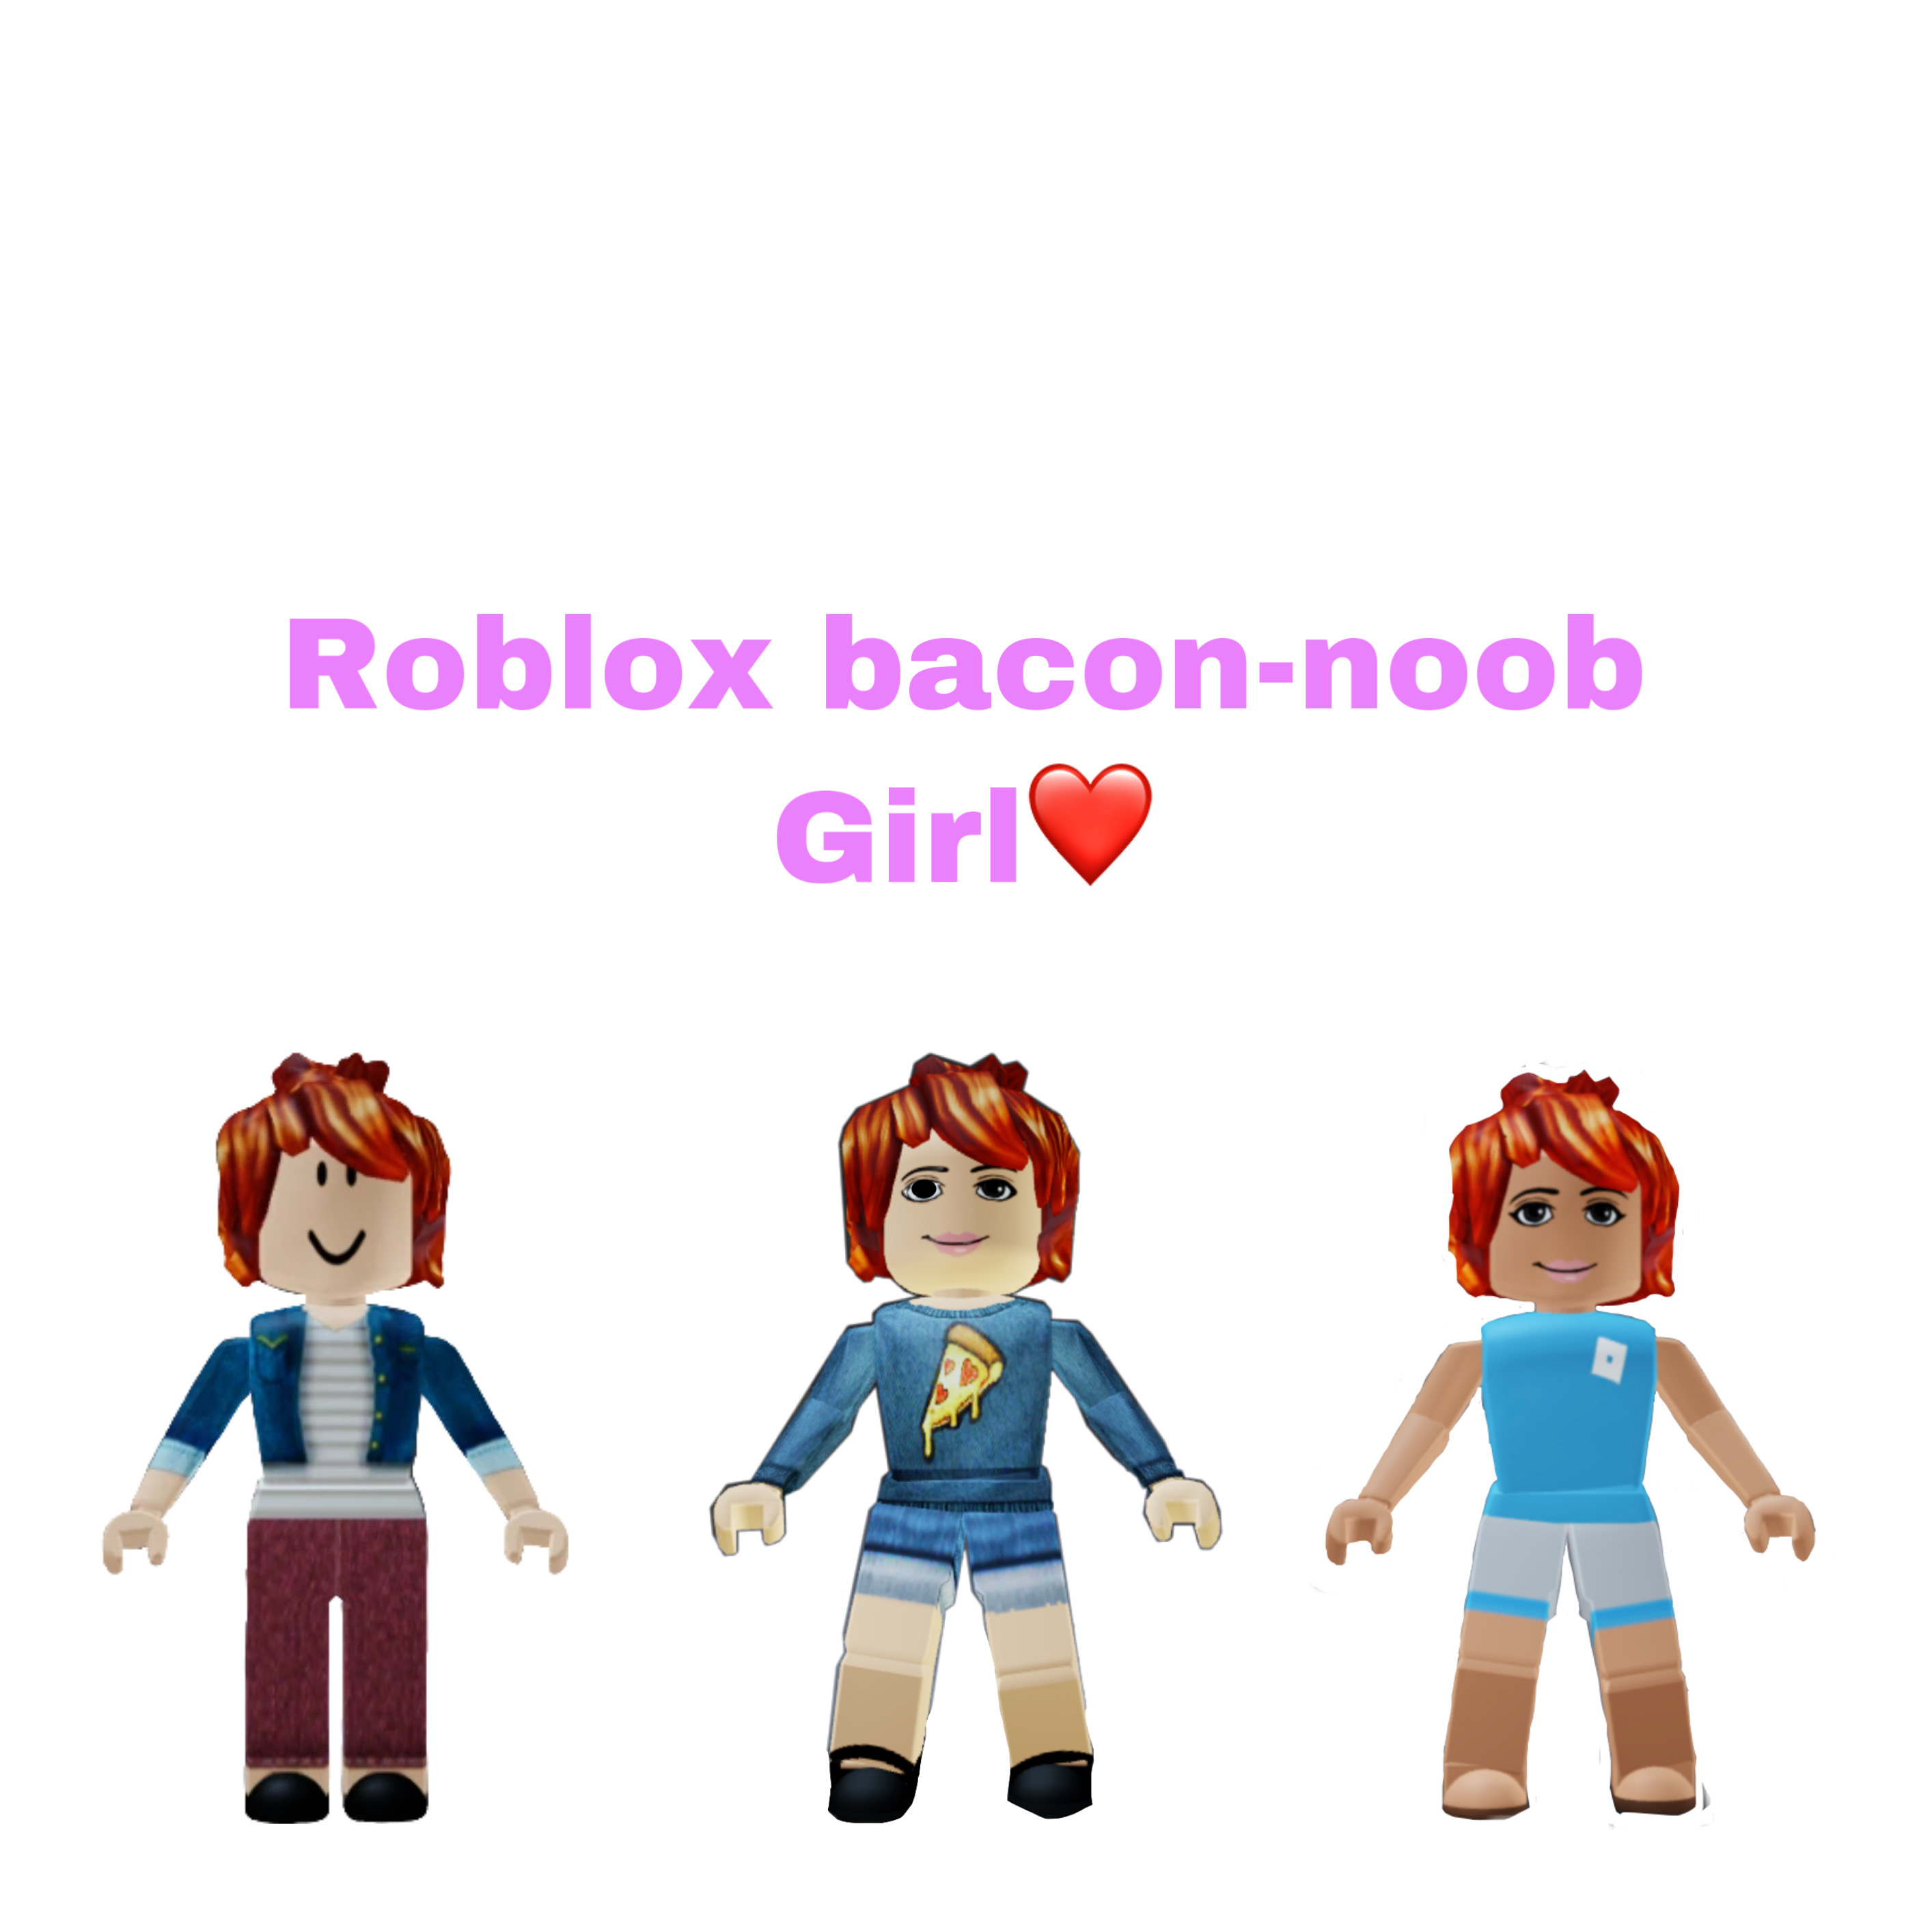 Bacon girl Roblox